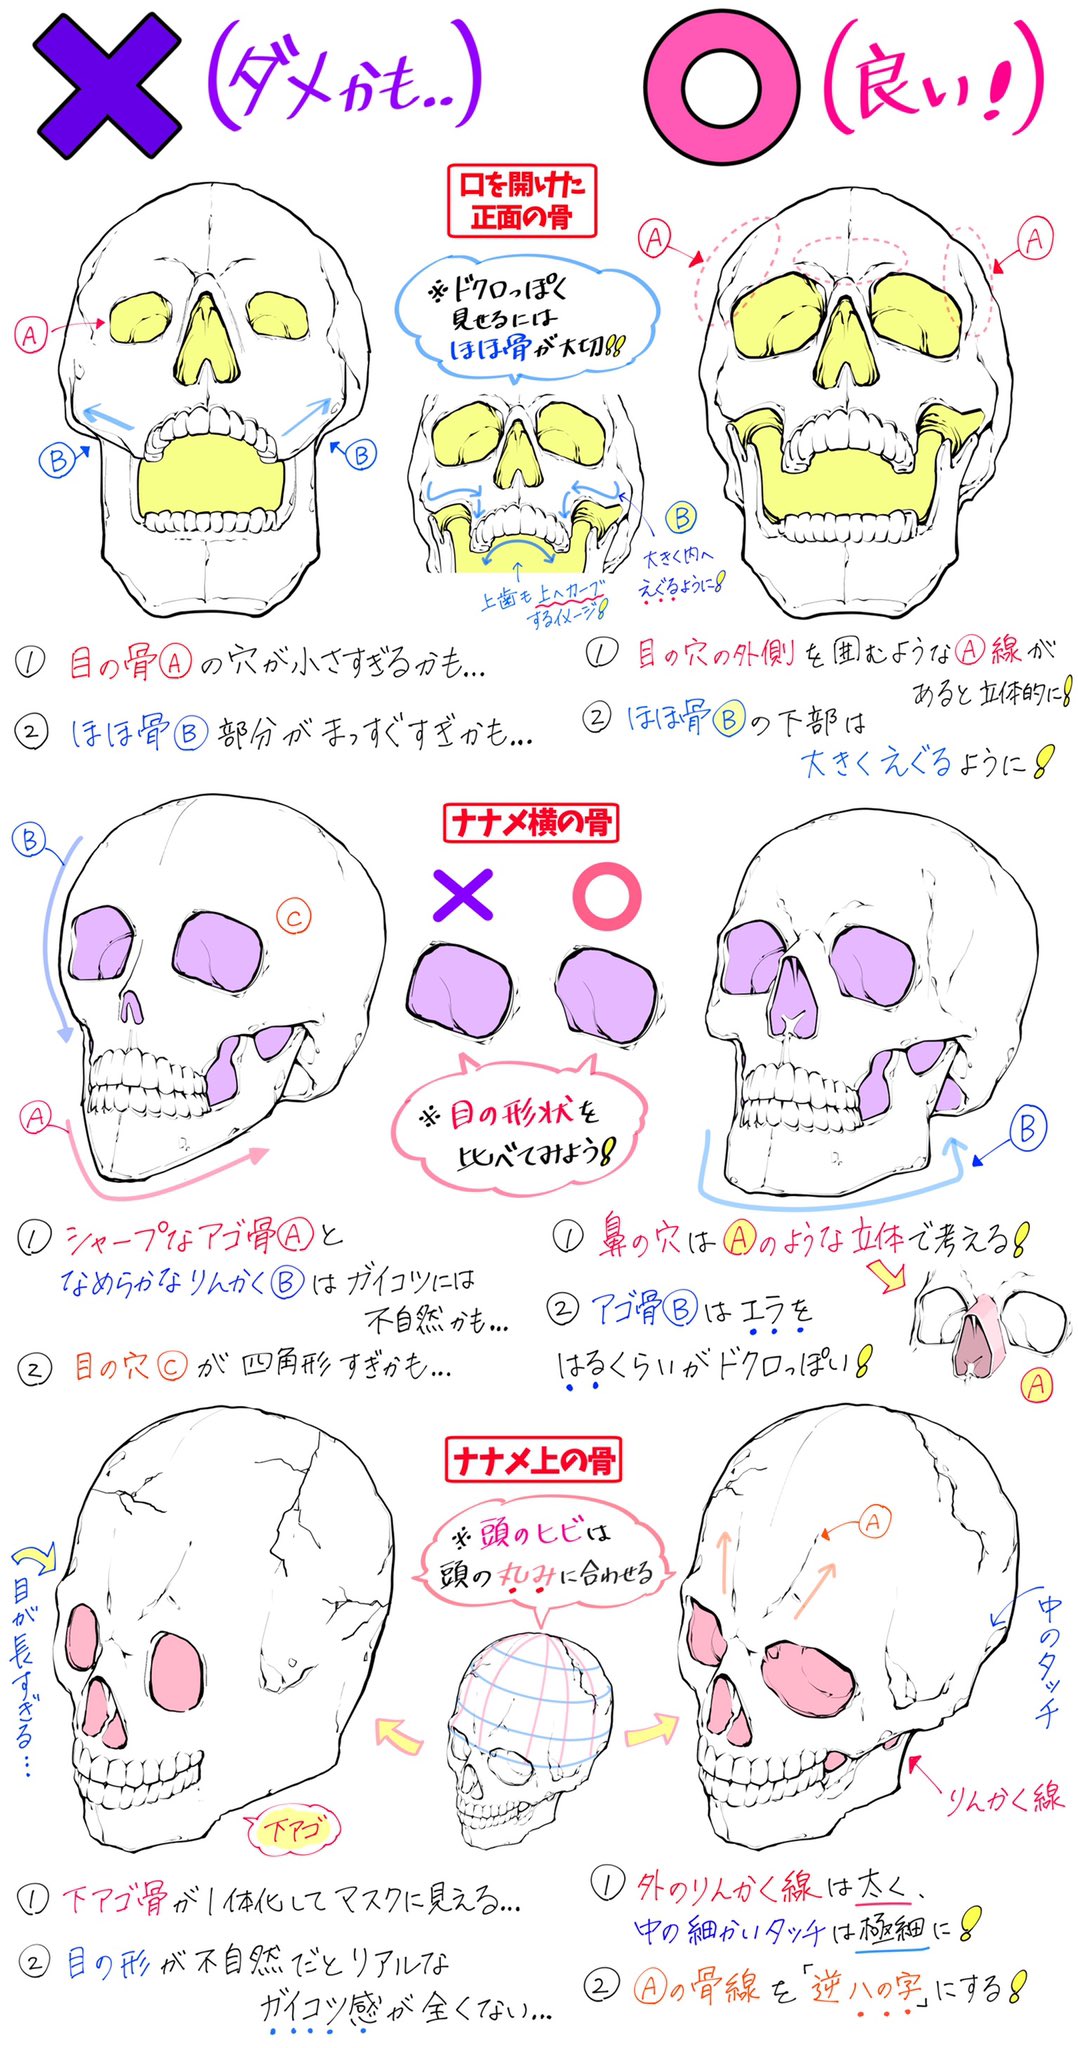 吉村拓也 イラスト講座 骸骨の描き方 骨の角度やドクロ絵 が上達する ダメかも と 良いかも